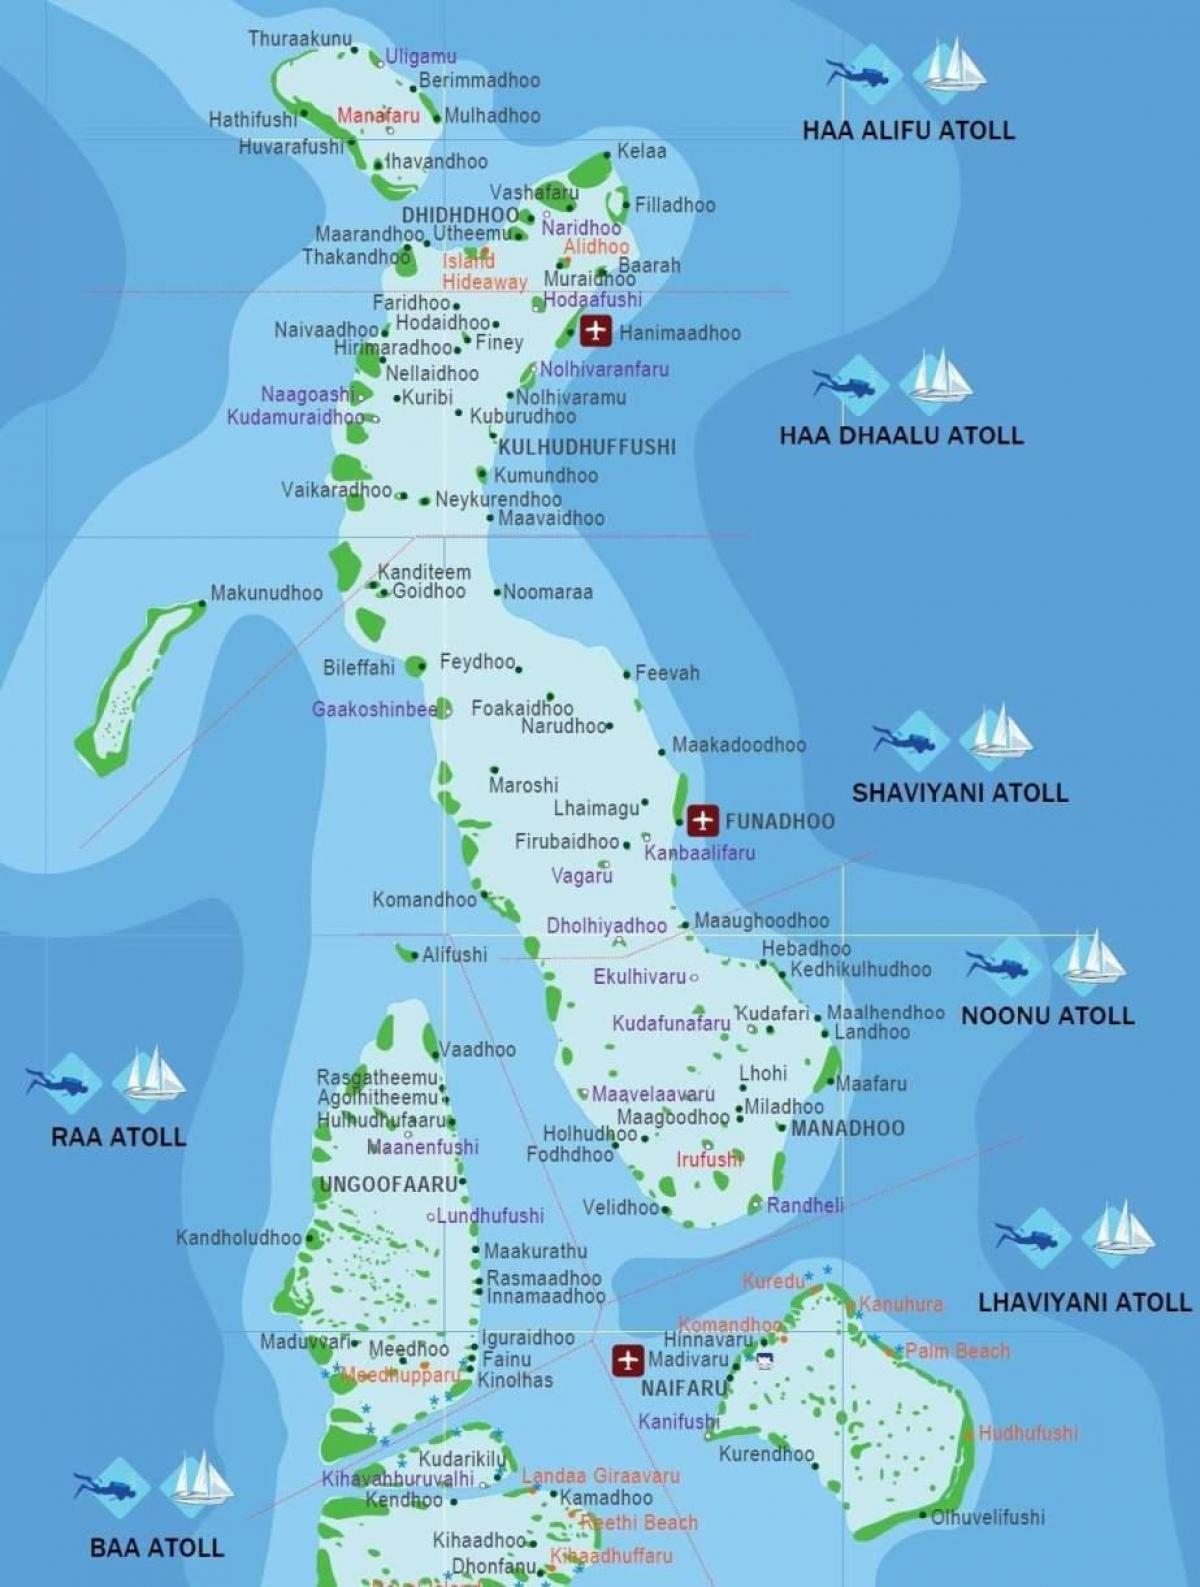 完整的地图马尔代夫